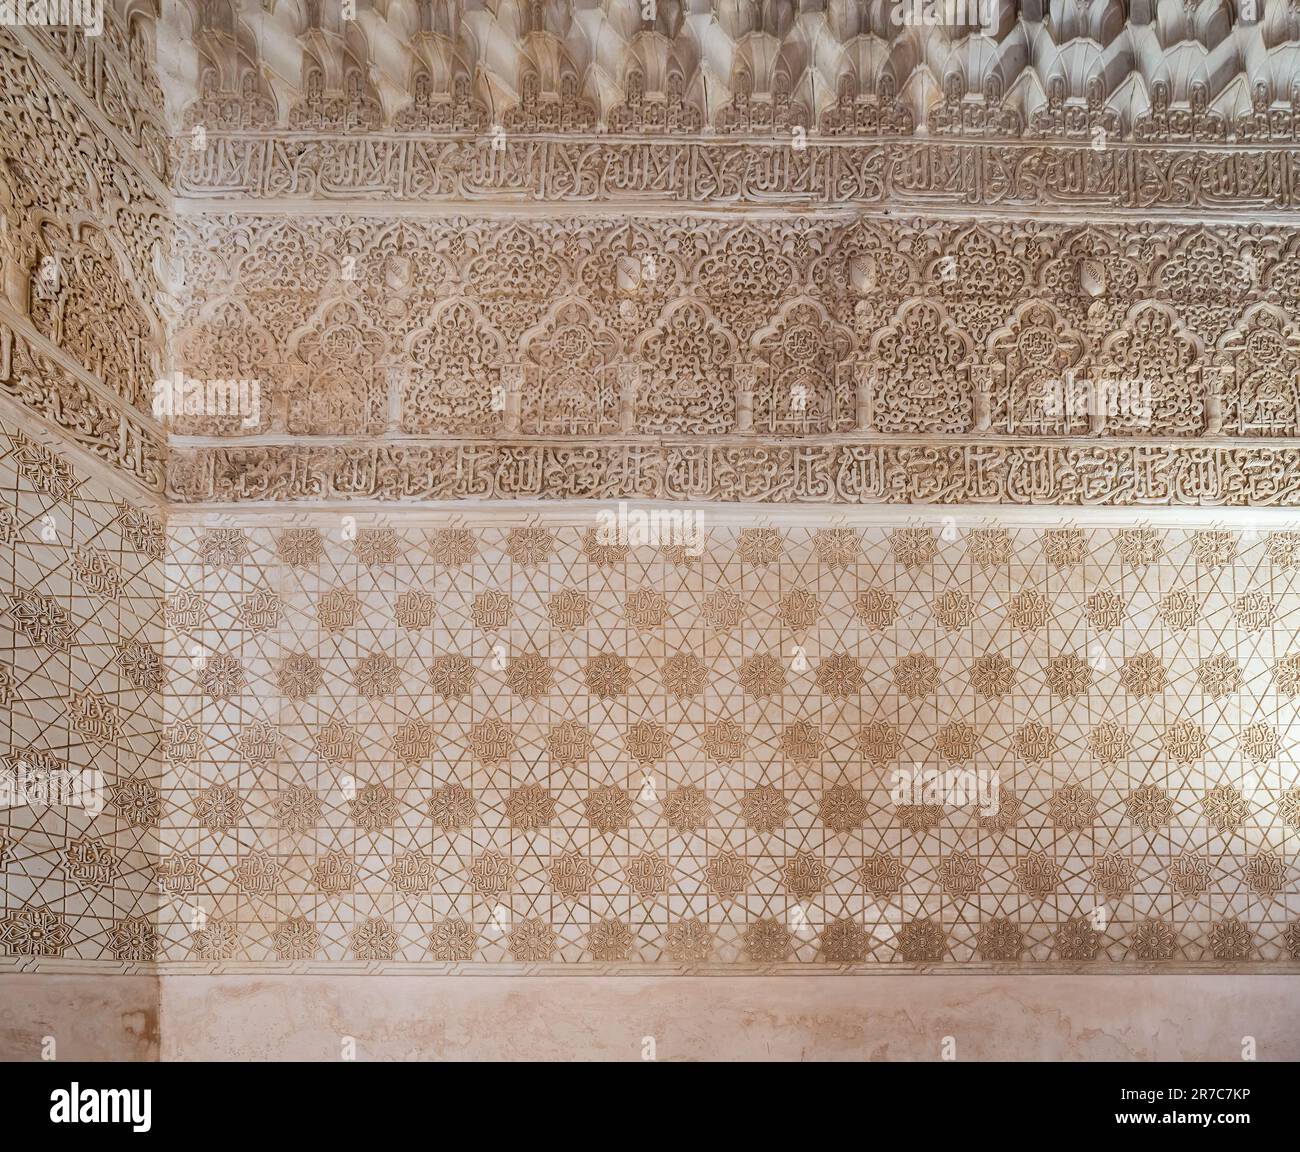 Kunstvoll verzierte Stuckmauer im Comares-Palast in den Nasriden-Palästen der Alhambra - Granada, Andalusien, Spanien Stockfoto